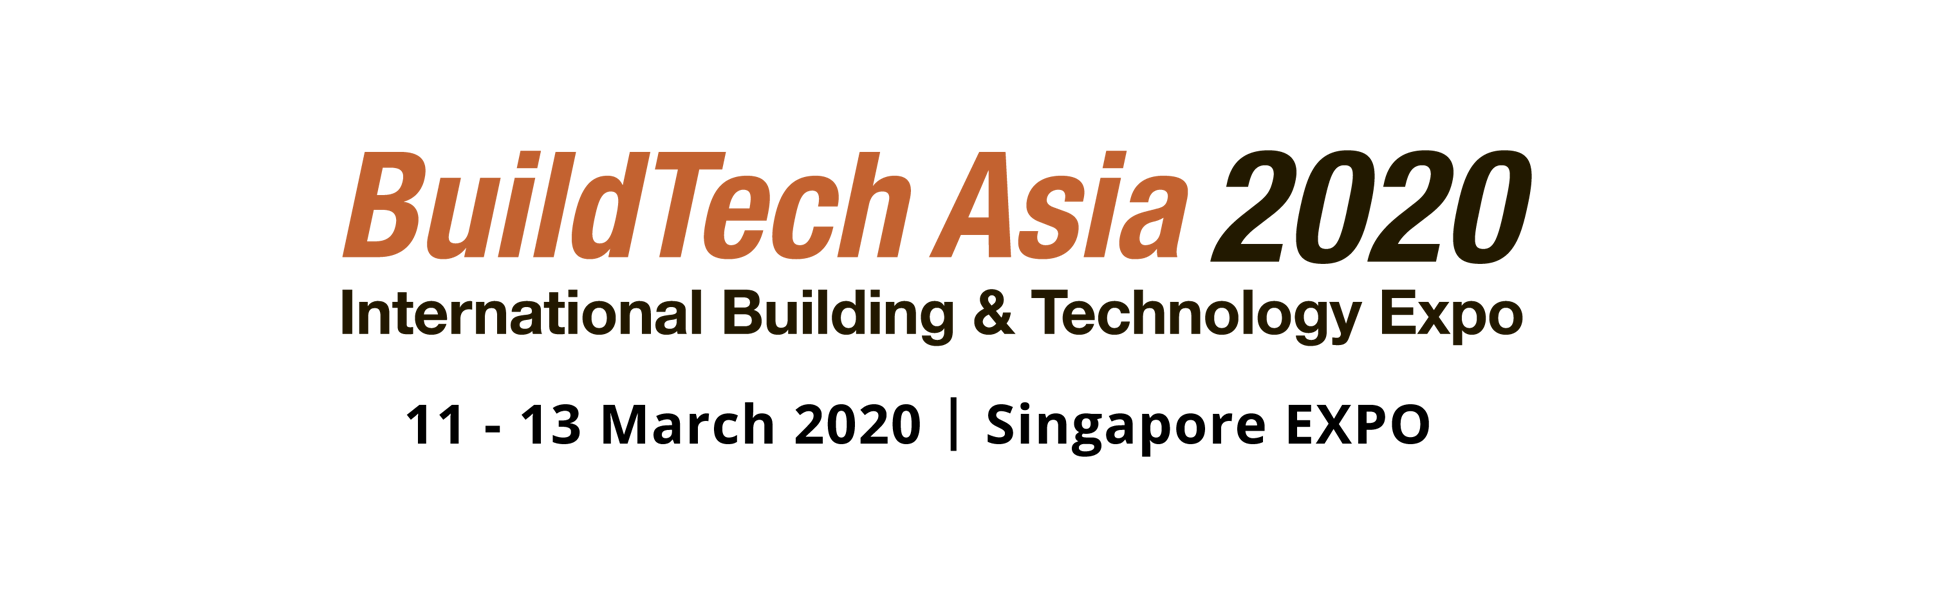 BuildTech Asia 2020, Singapore, South East, Singapore